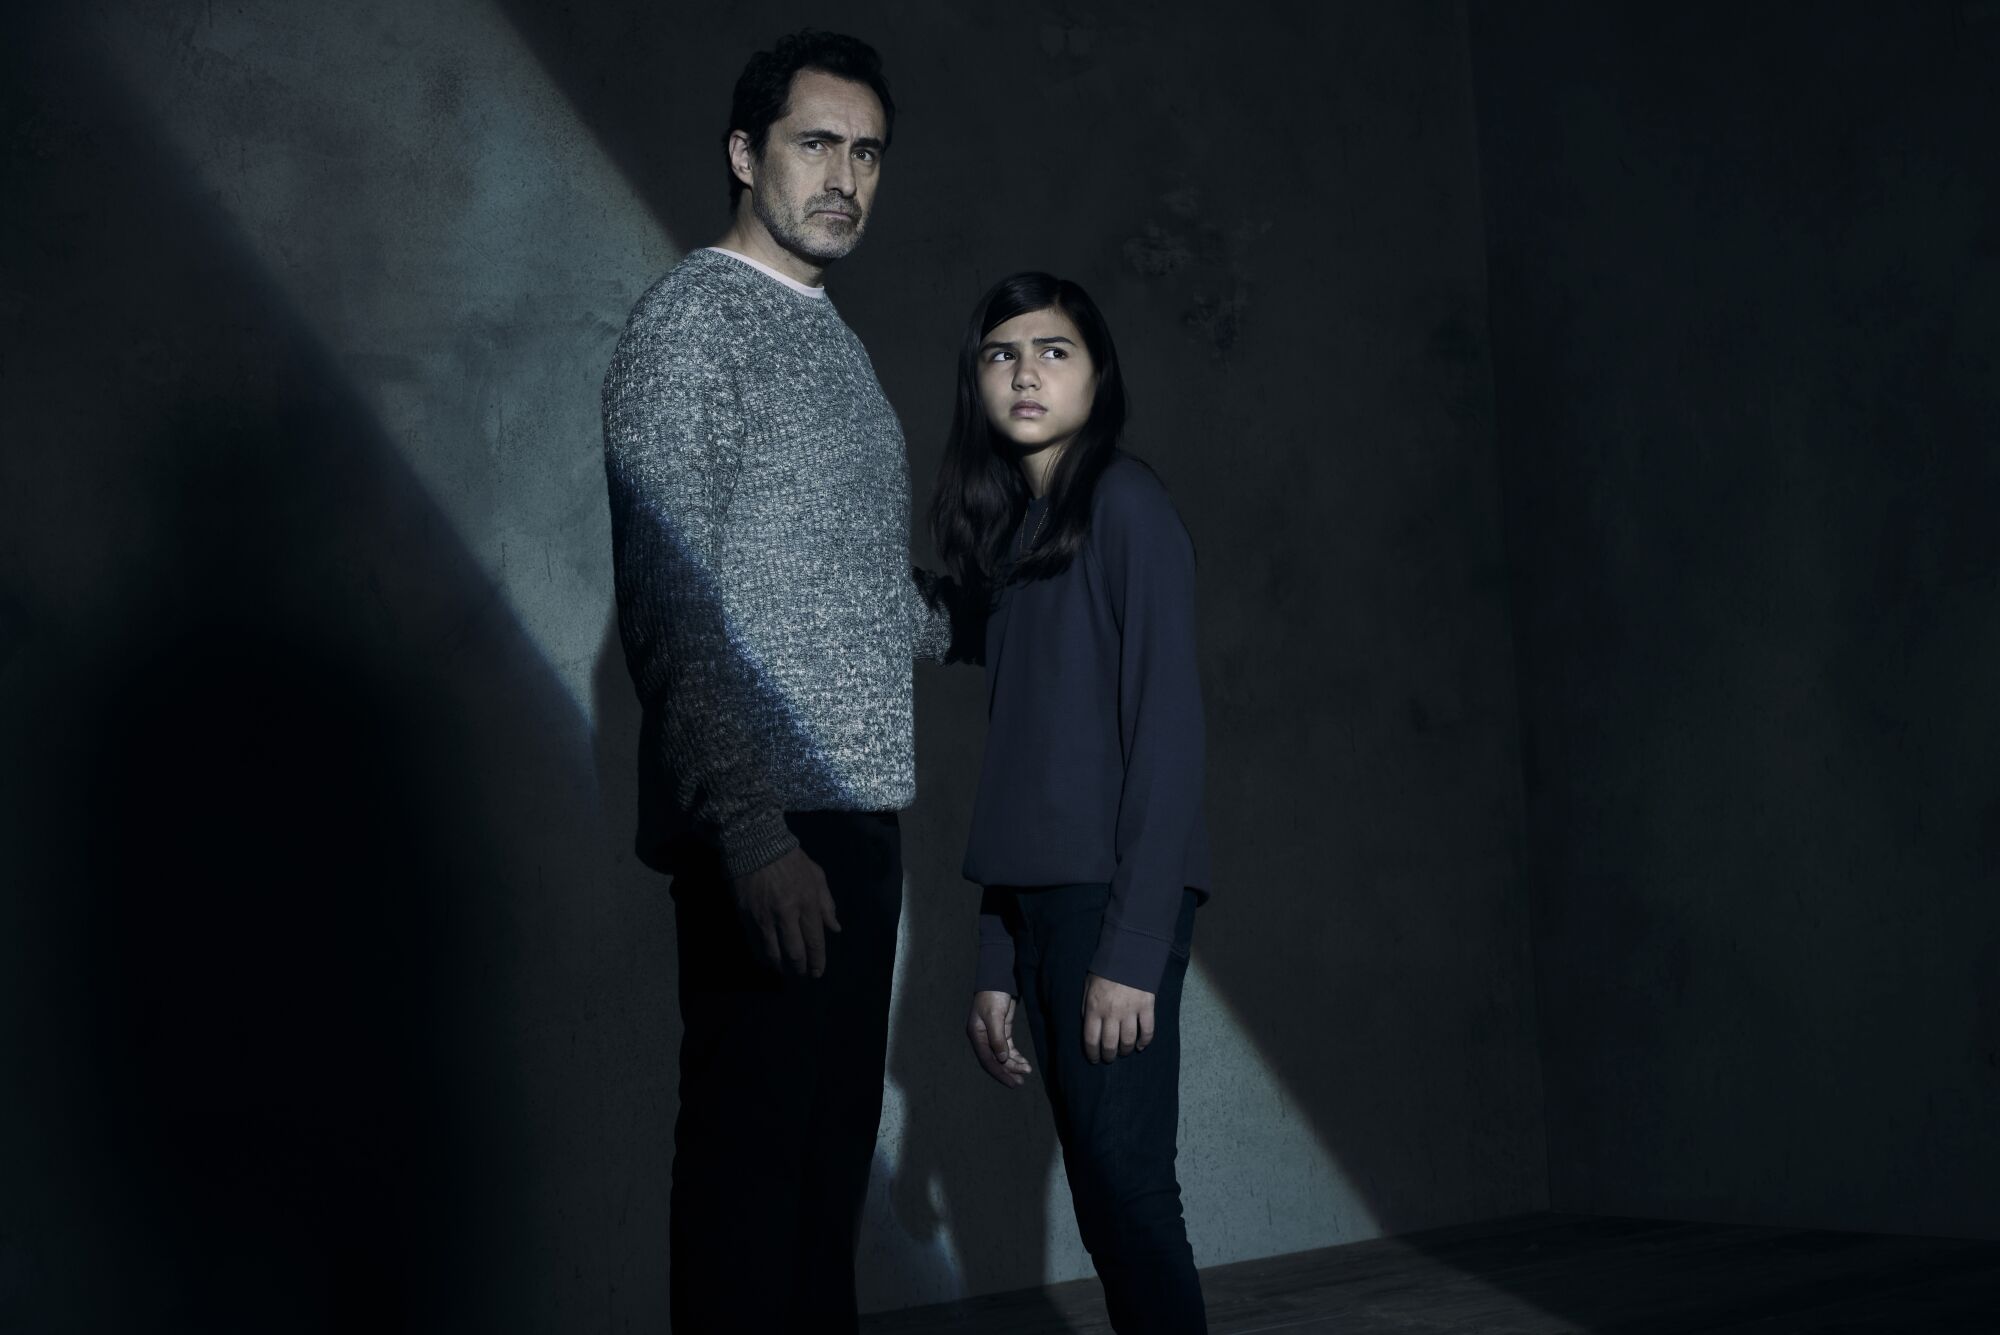 Les acteurs représentant le père et la fille se tiennent côte à côte.